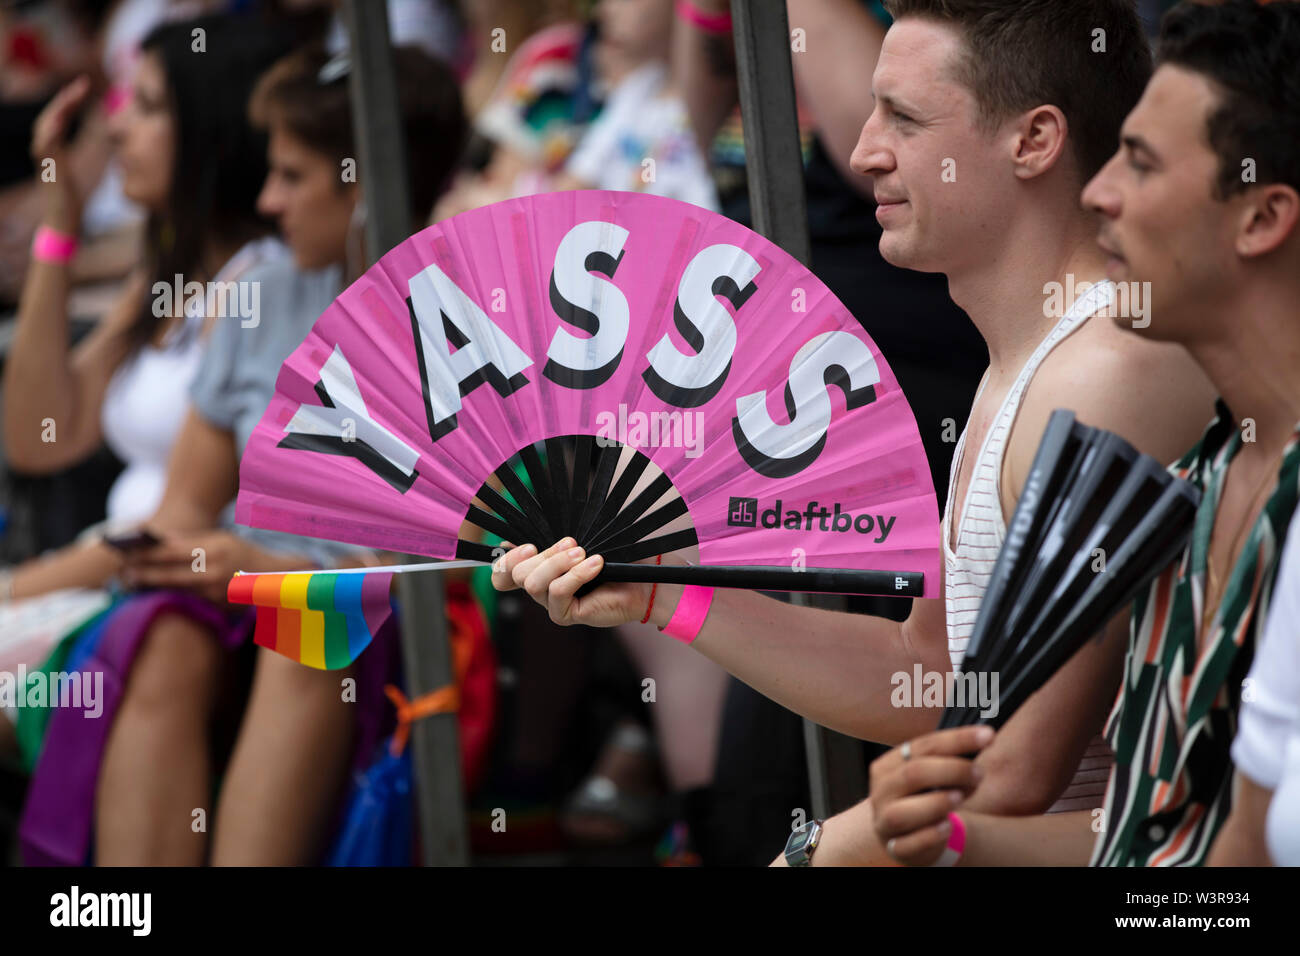 Londres, UK - 6 juillet 2019 : un homme tenant un ventilateur avec Yasss message à la gay pride annuelle de mars dans le centre de Londres Banque D'Images